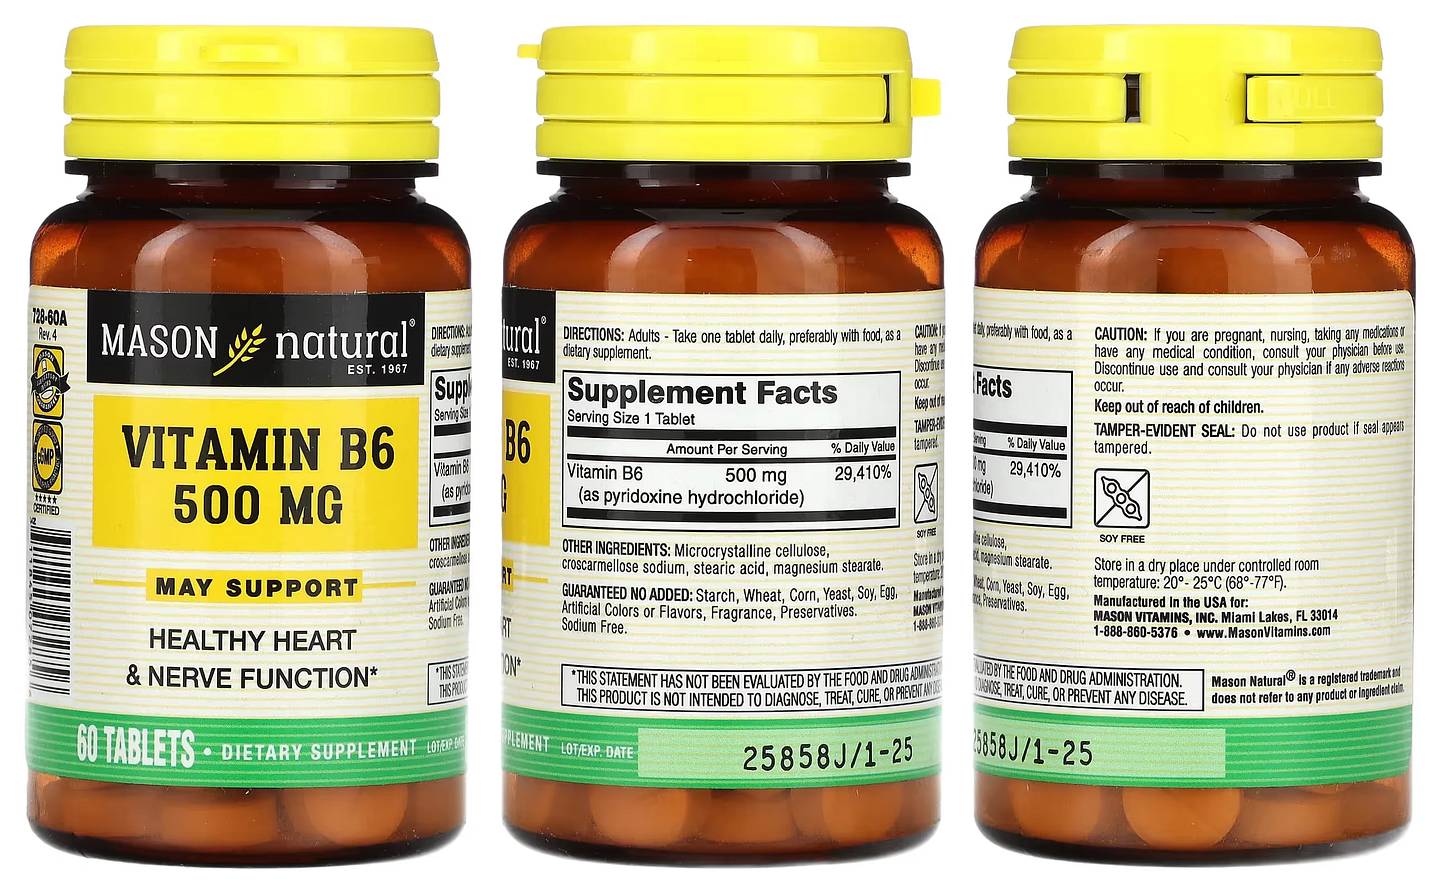 Mason Natural, Vitamin B6 packaging